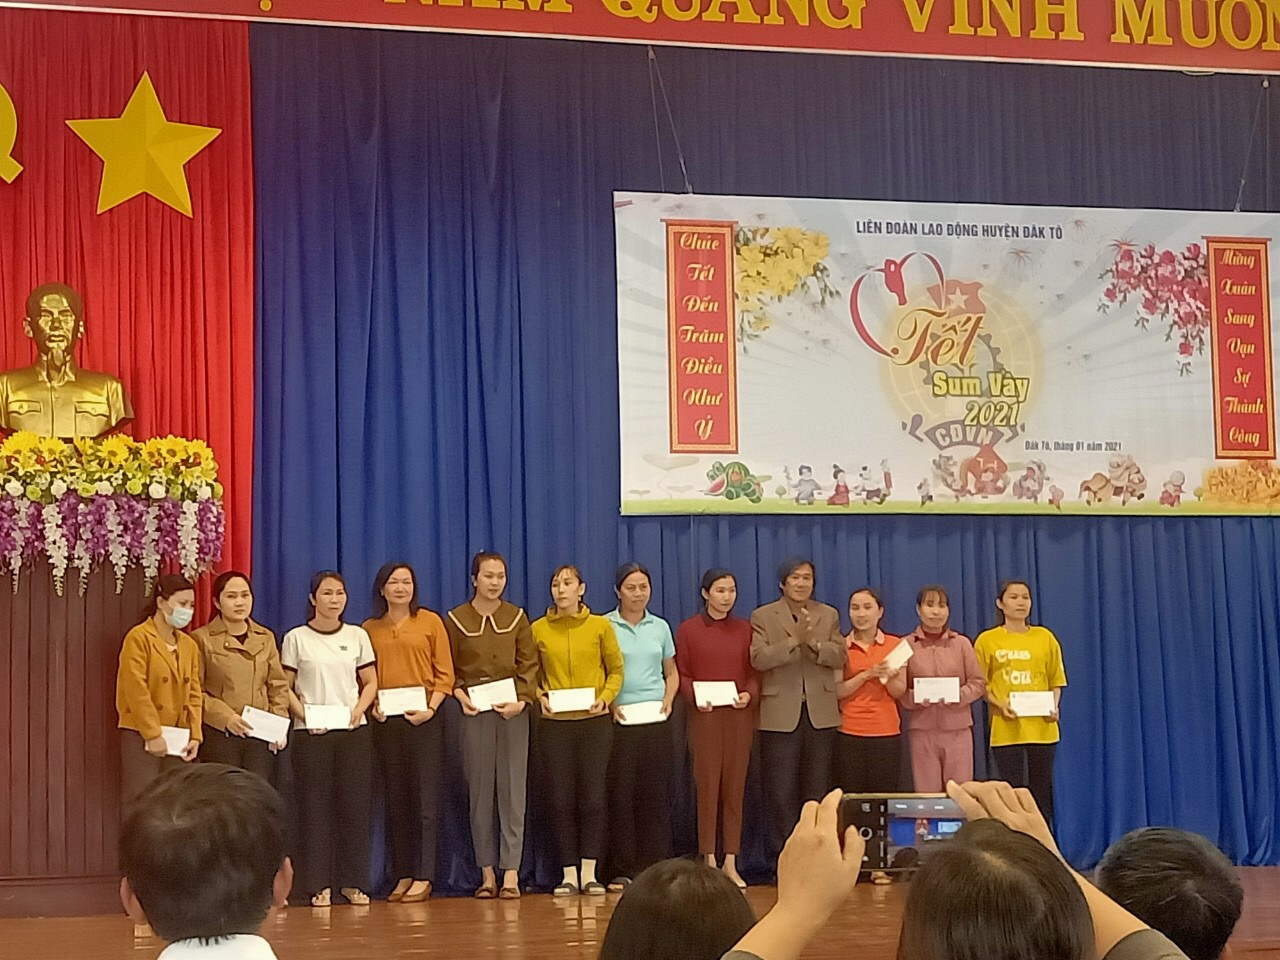 Liên đoàn Lao động huyện tổ chức chương trình “Tết Sum vầy” - Xuân Tân Sửu năm 2021